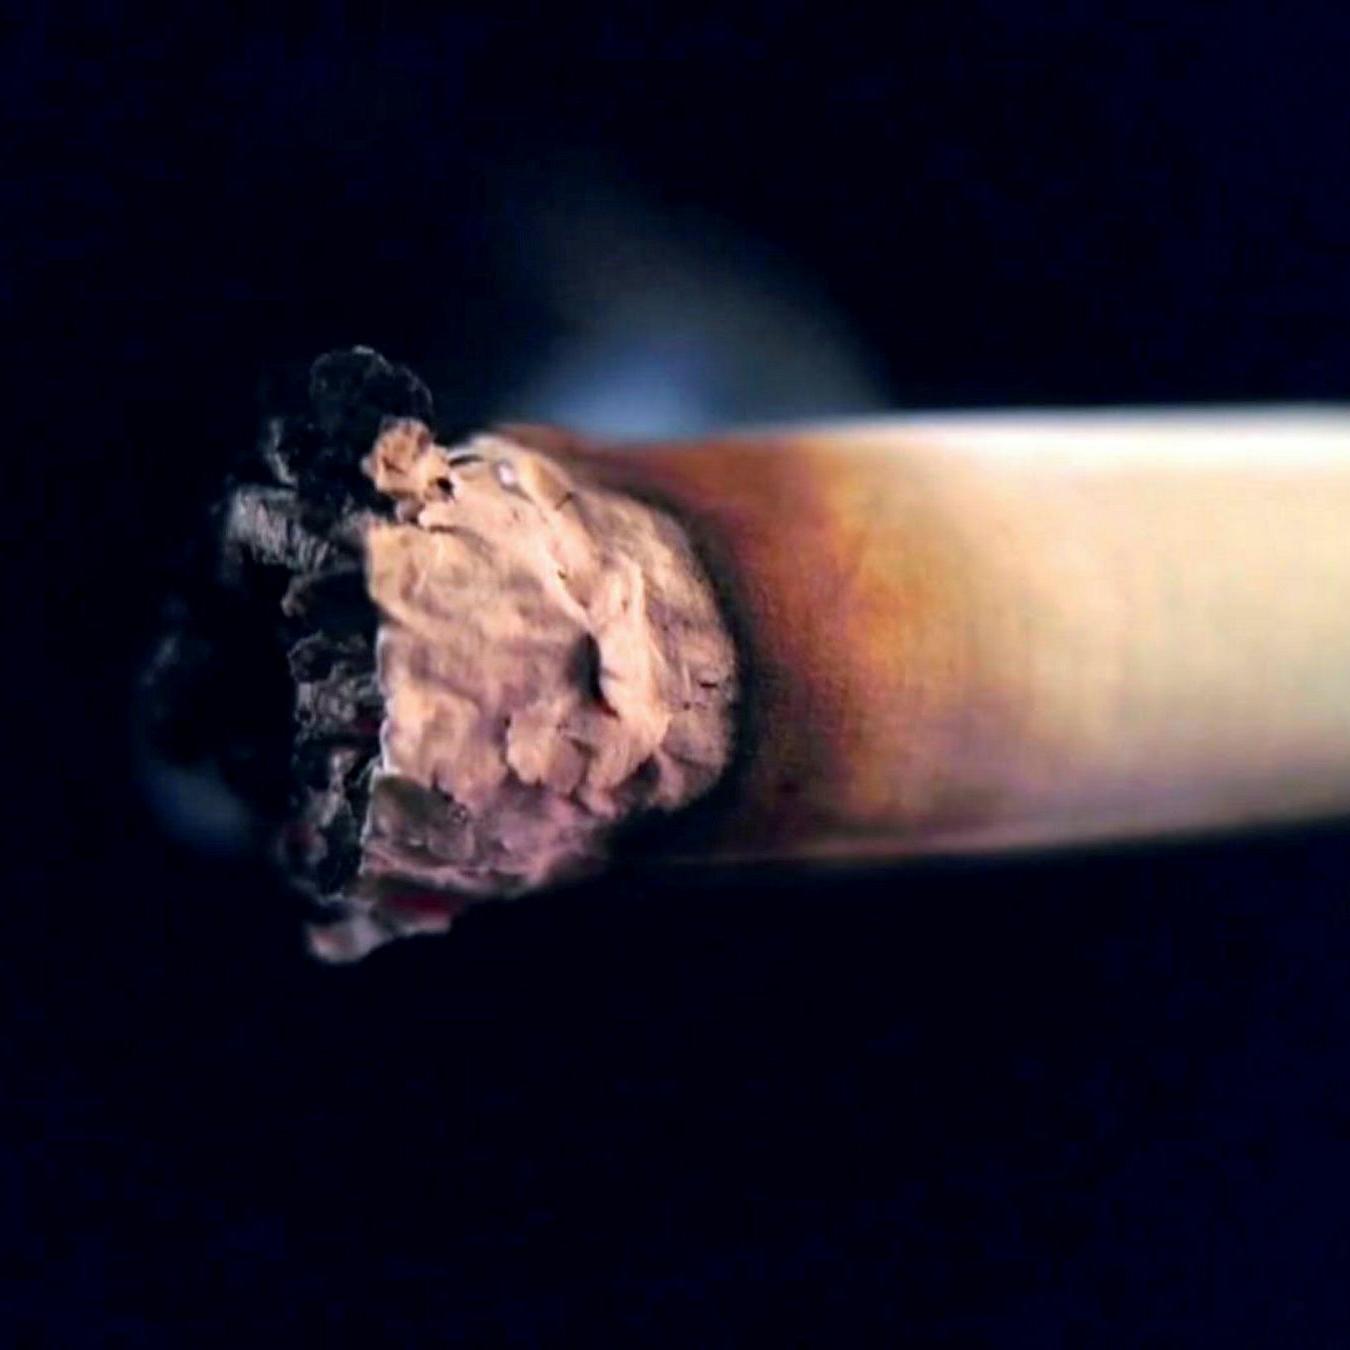 Les nouveaux pièges de l'industrie de la nicotine